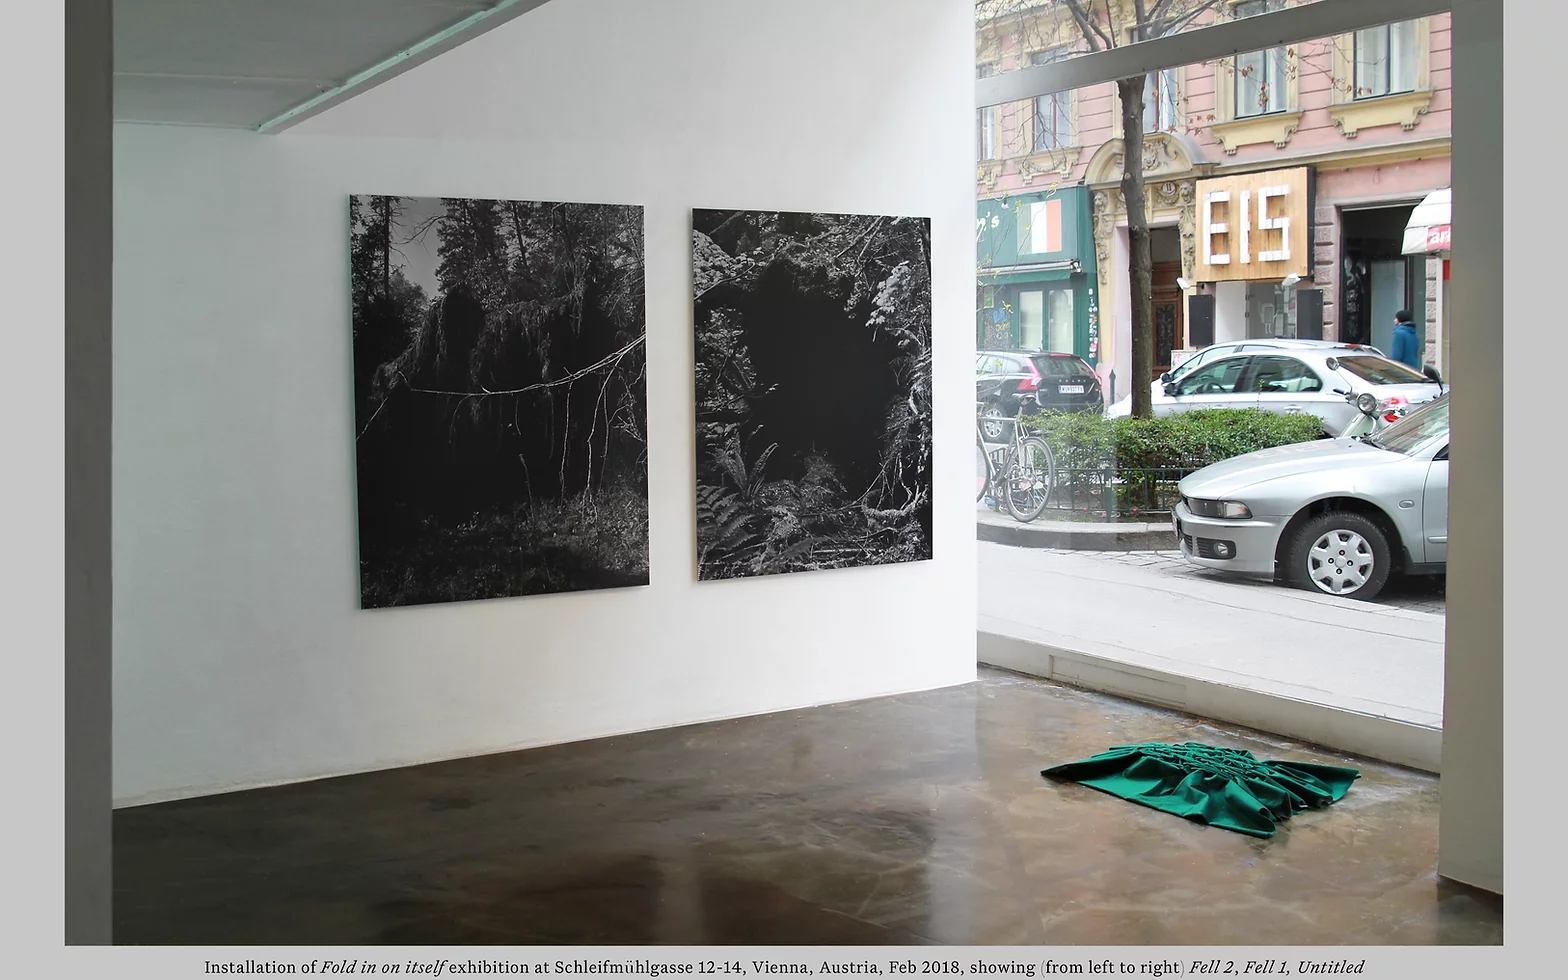 Installation of <em>Fold in on itself</em> exhibition at Schleifmuhlgasse 12-14, Vienna, Austria, Feb 2018, showing (from left to right) <em>Fell 2</em>, <em>Fell 1</em>, <em>Untitled</em>.